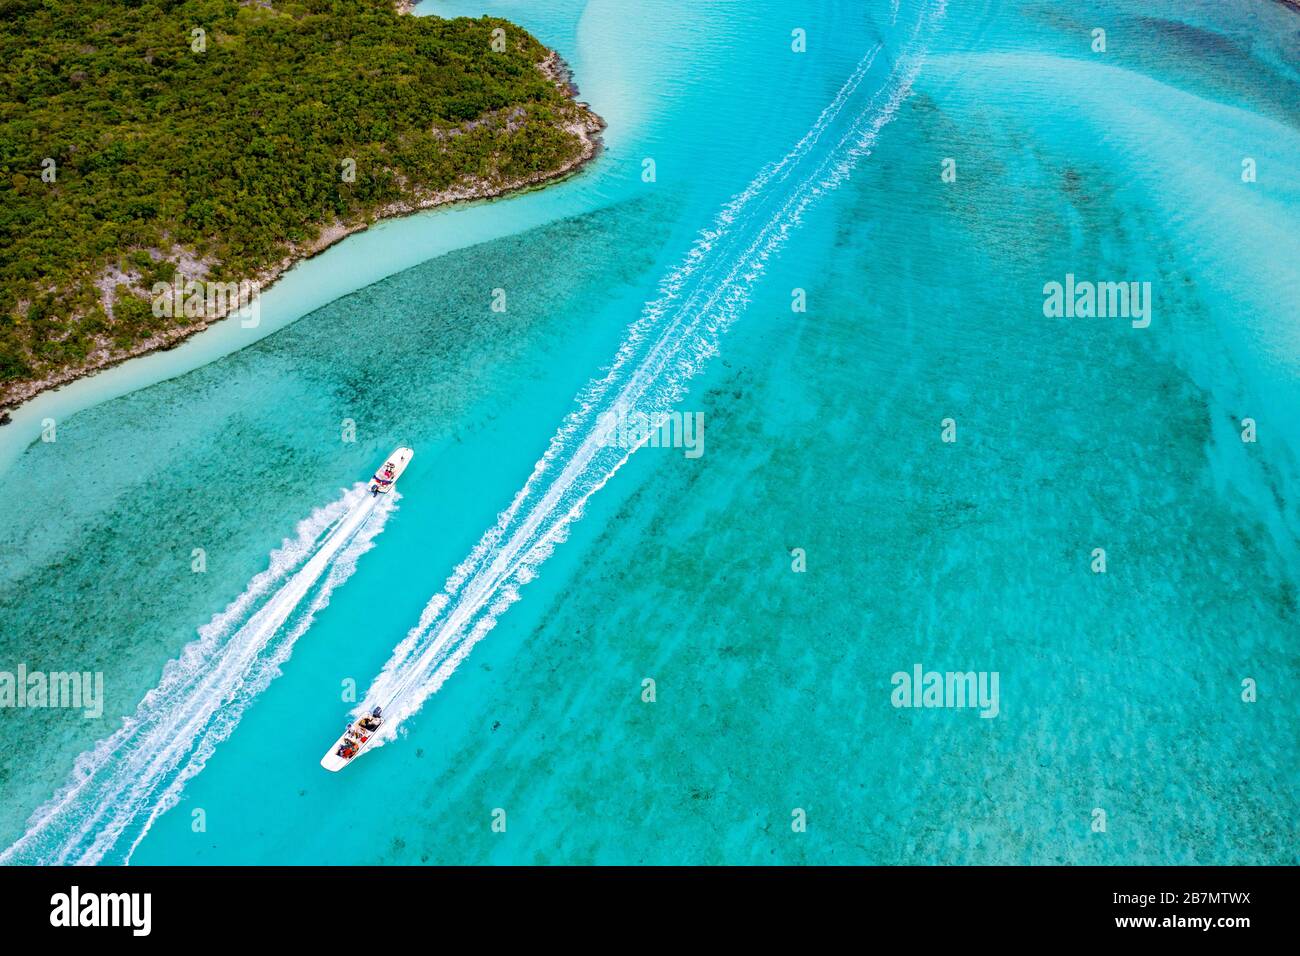 Exuma Cays Land and Sea Park, Exuma Island Chain, Bahamas Stock Photo